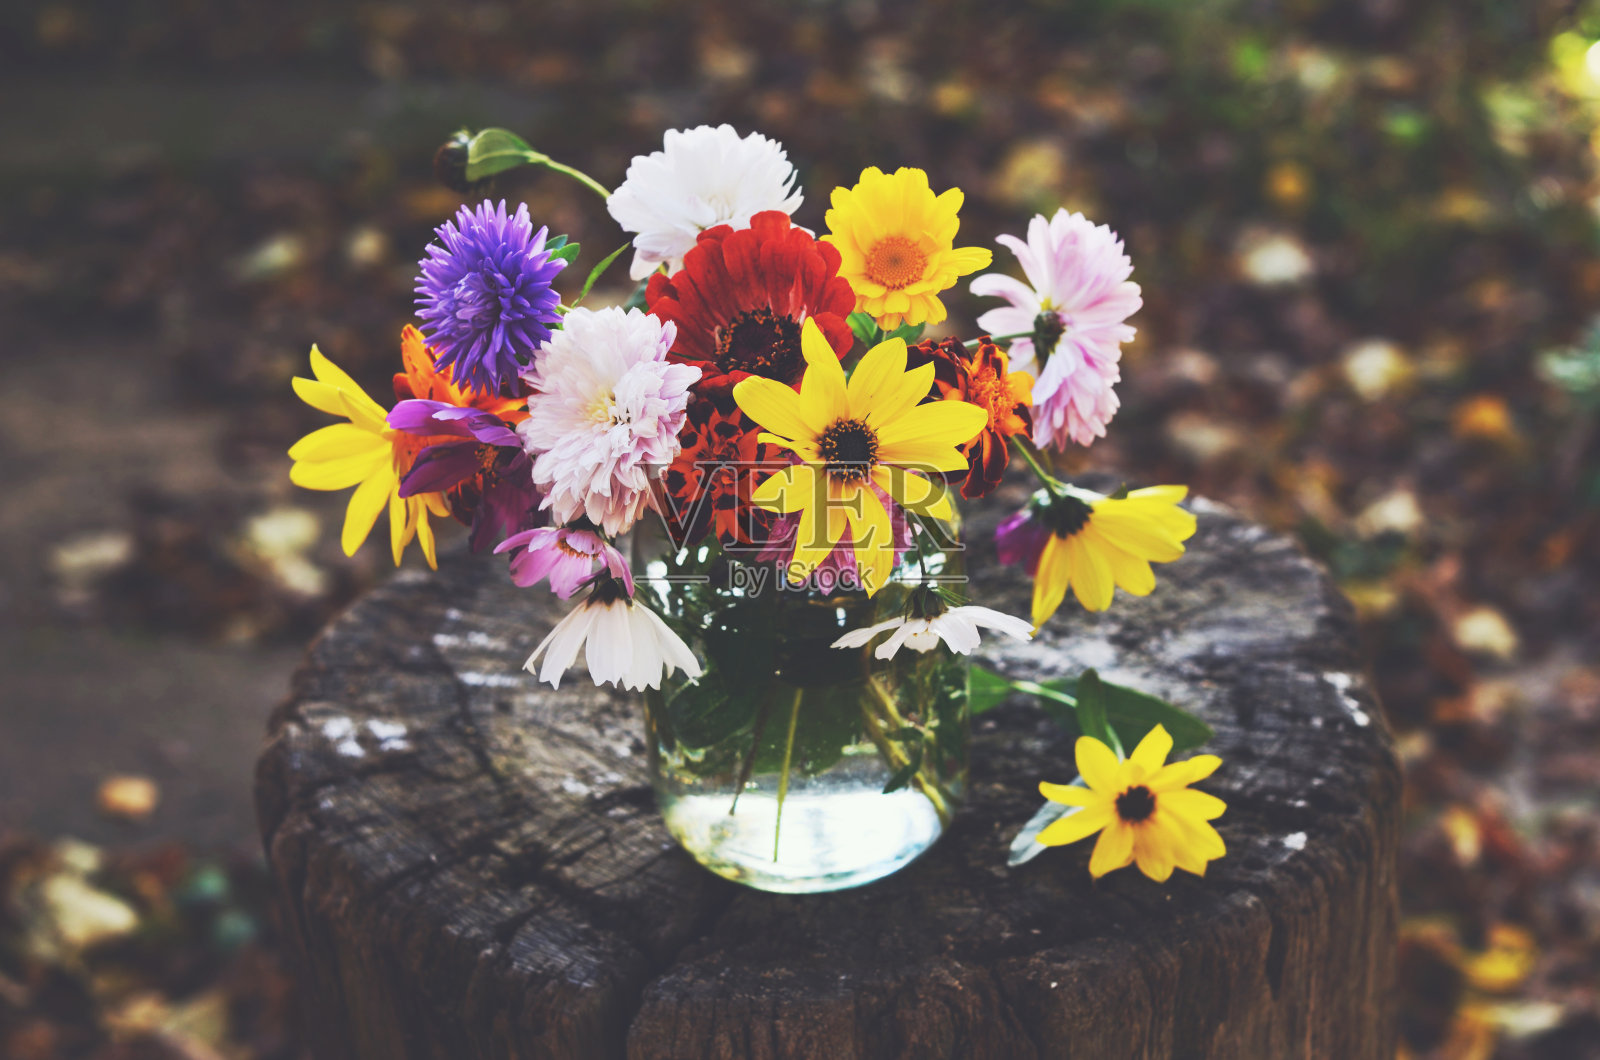 一束五颜六色的秋花放在玻璃罐里照片摄影图片